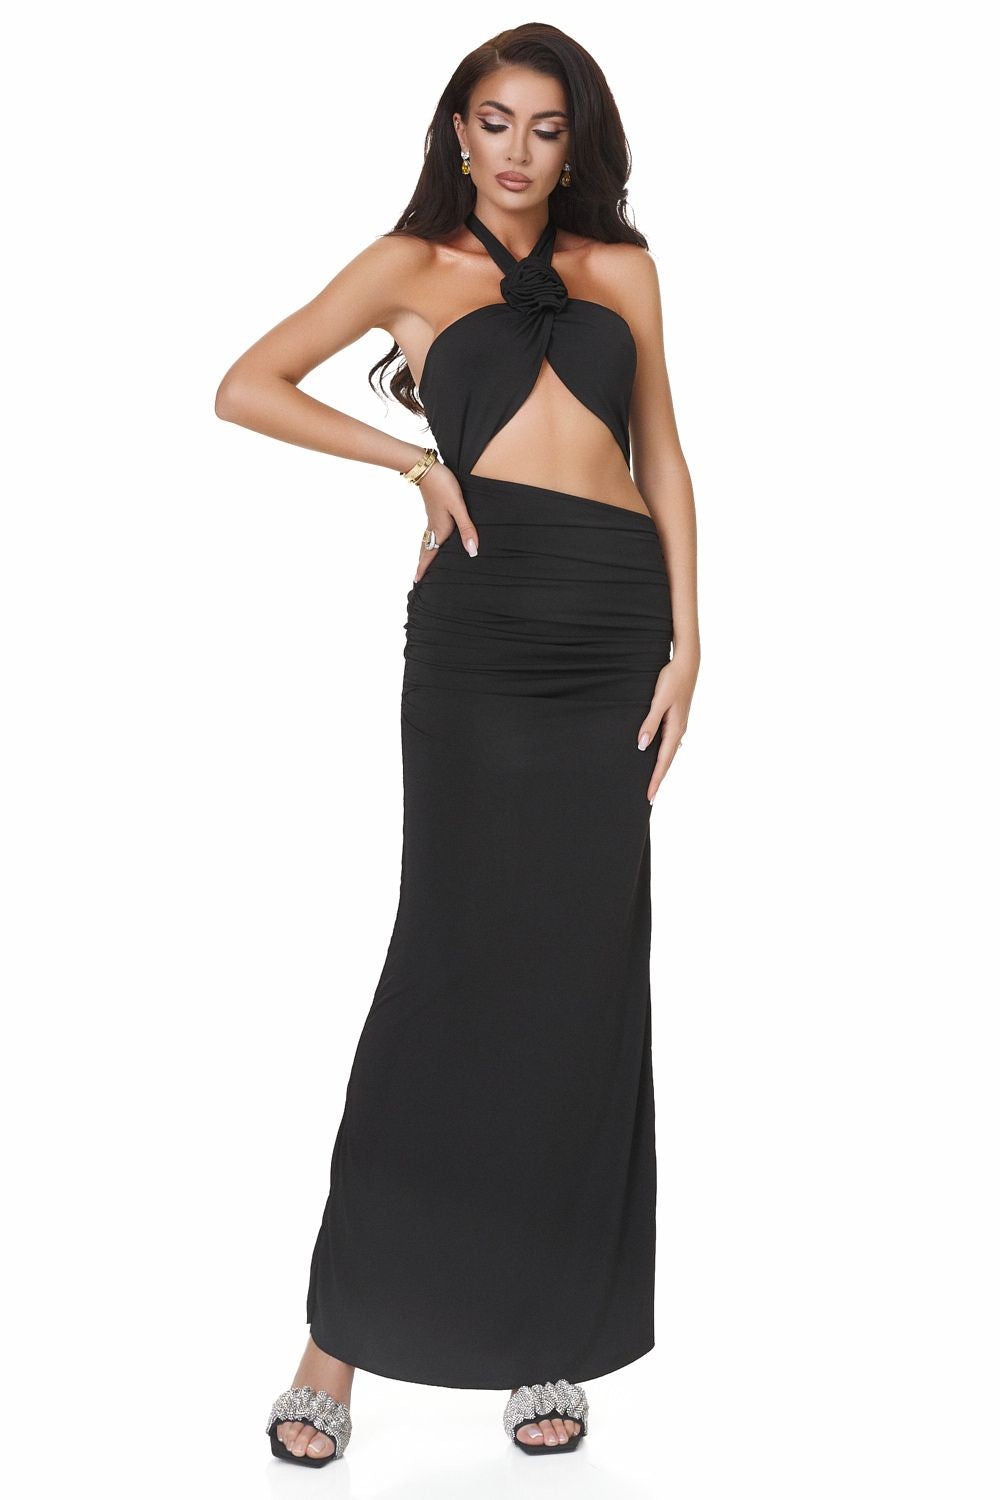 Heride Bogas long black dress for women